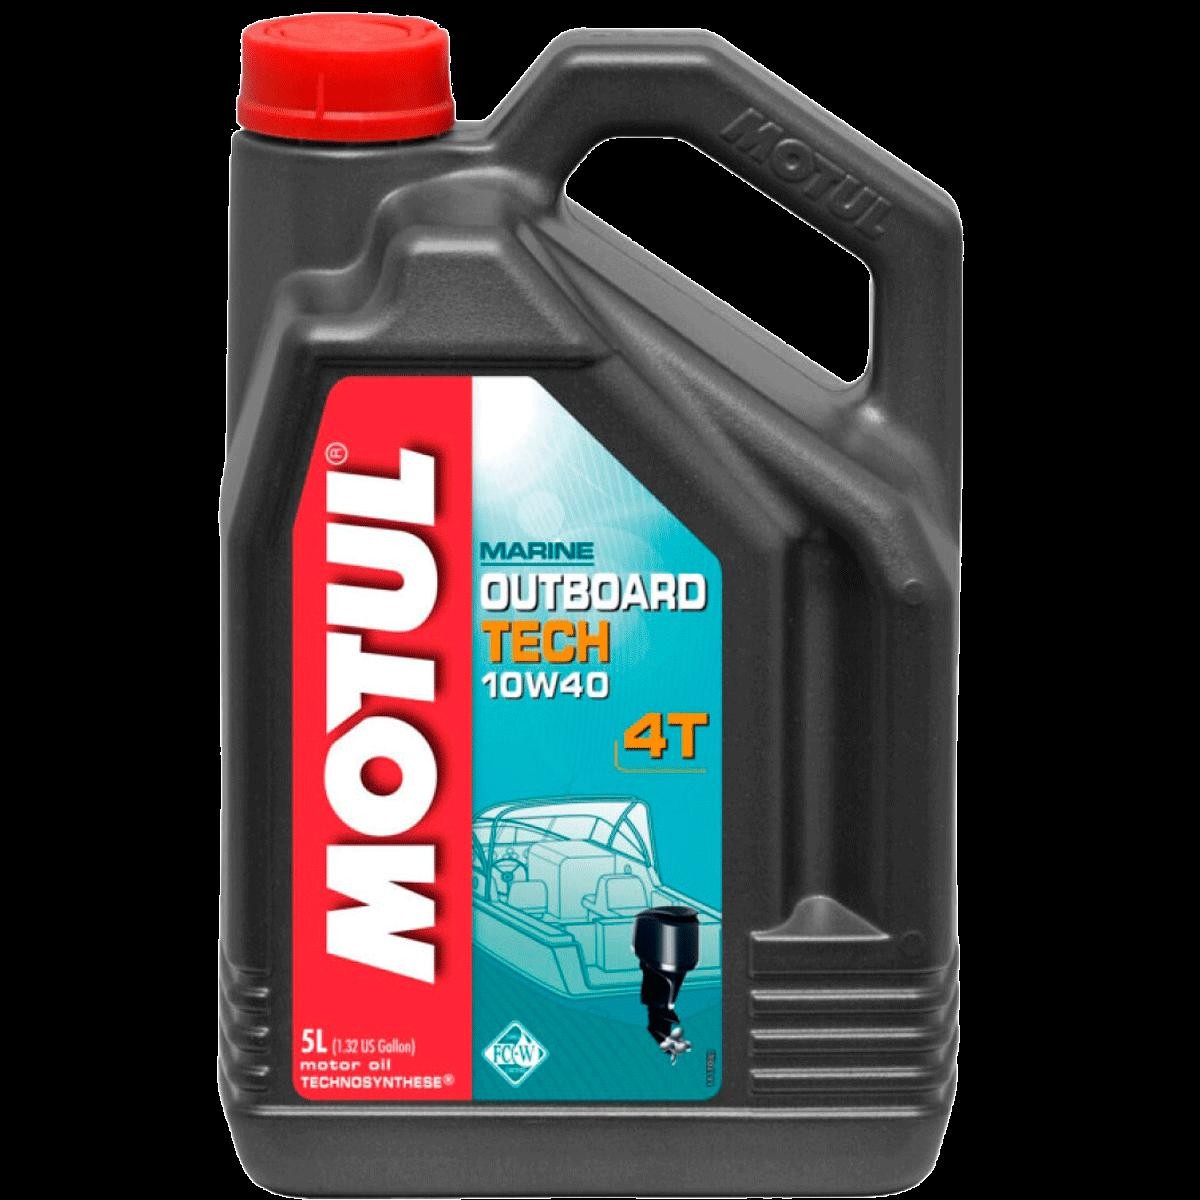 MOTUL OUTBOARD TECH, 4T 10W-40, 5l, Part Synthetic Oil Motor oil 106354 buy